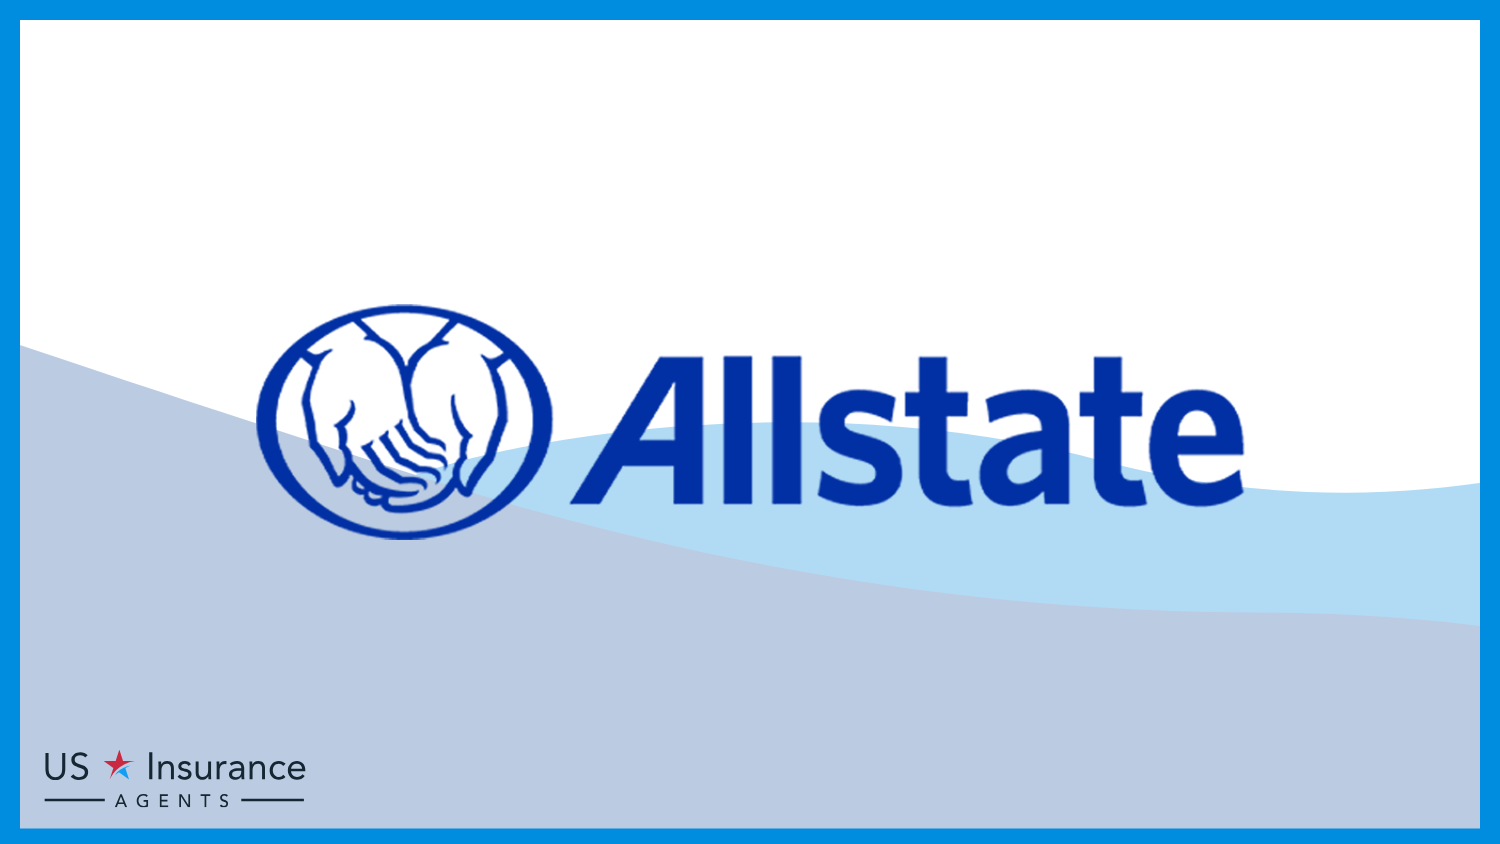 Allstate: Best Life Insurance for Veterans